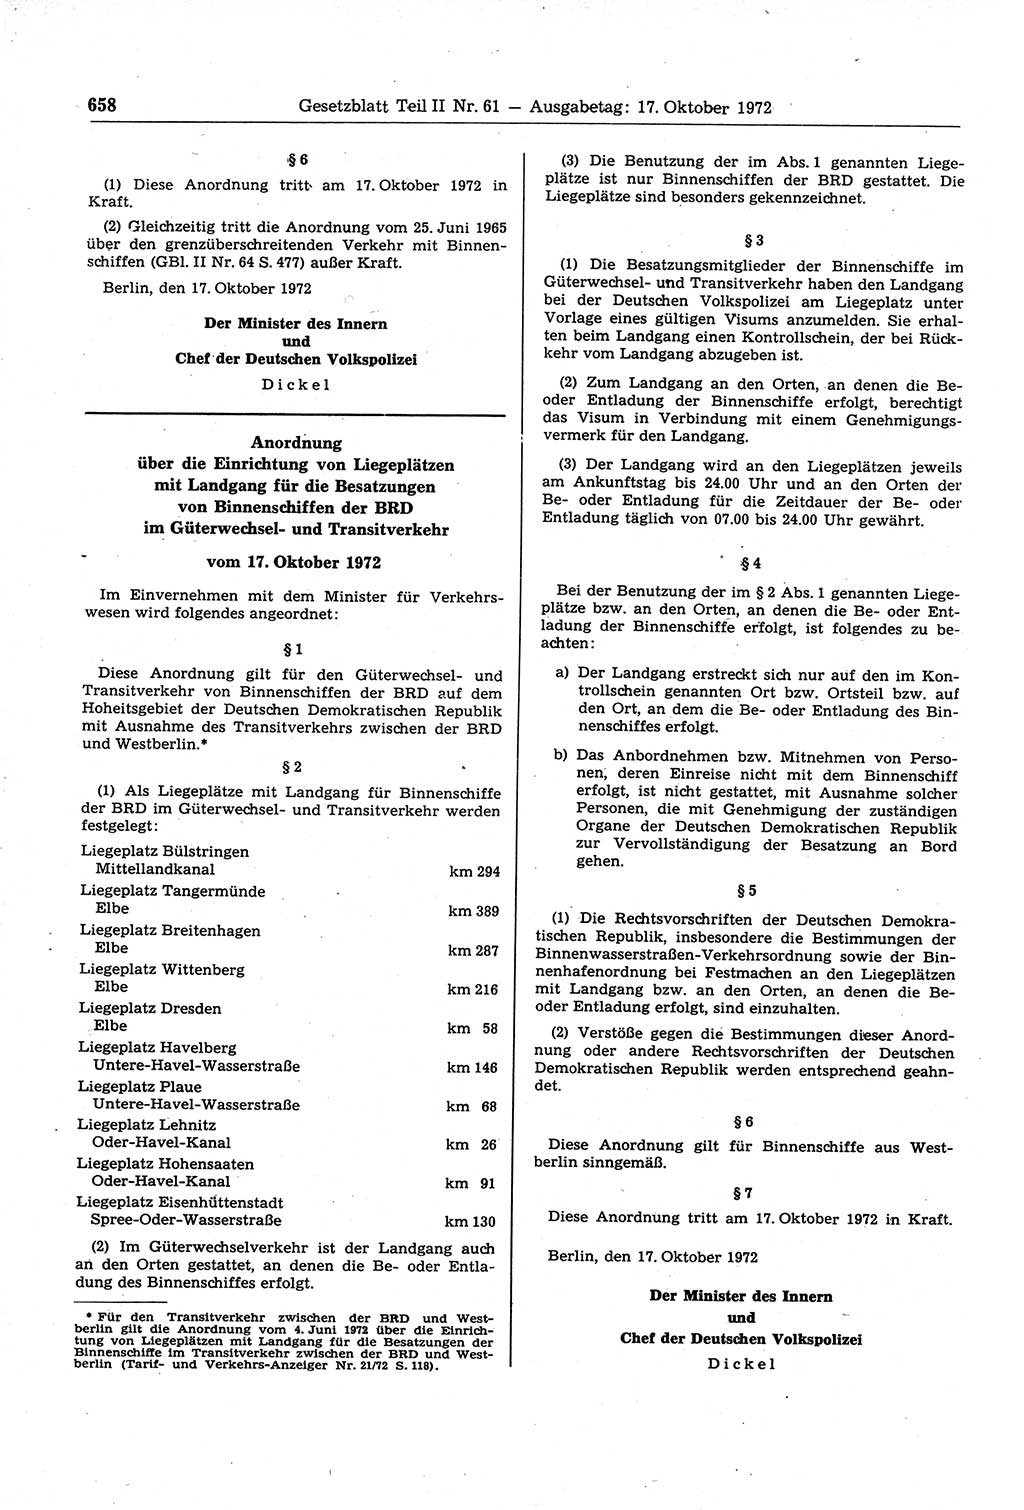 Gesetzblatt (GBl.) der Deutschen Demokratischen Republik (DDR) Teil ⅠⅠ 1972, Seite 658 (GBl. DDR ⅠⅠ 1972, S. 658)